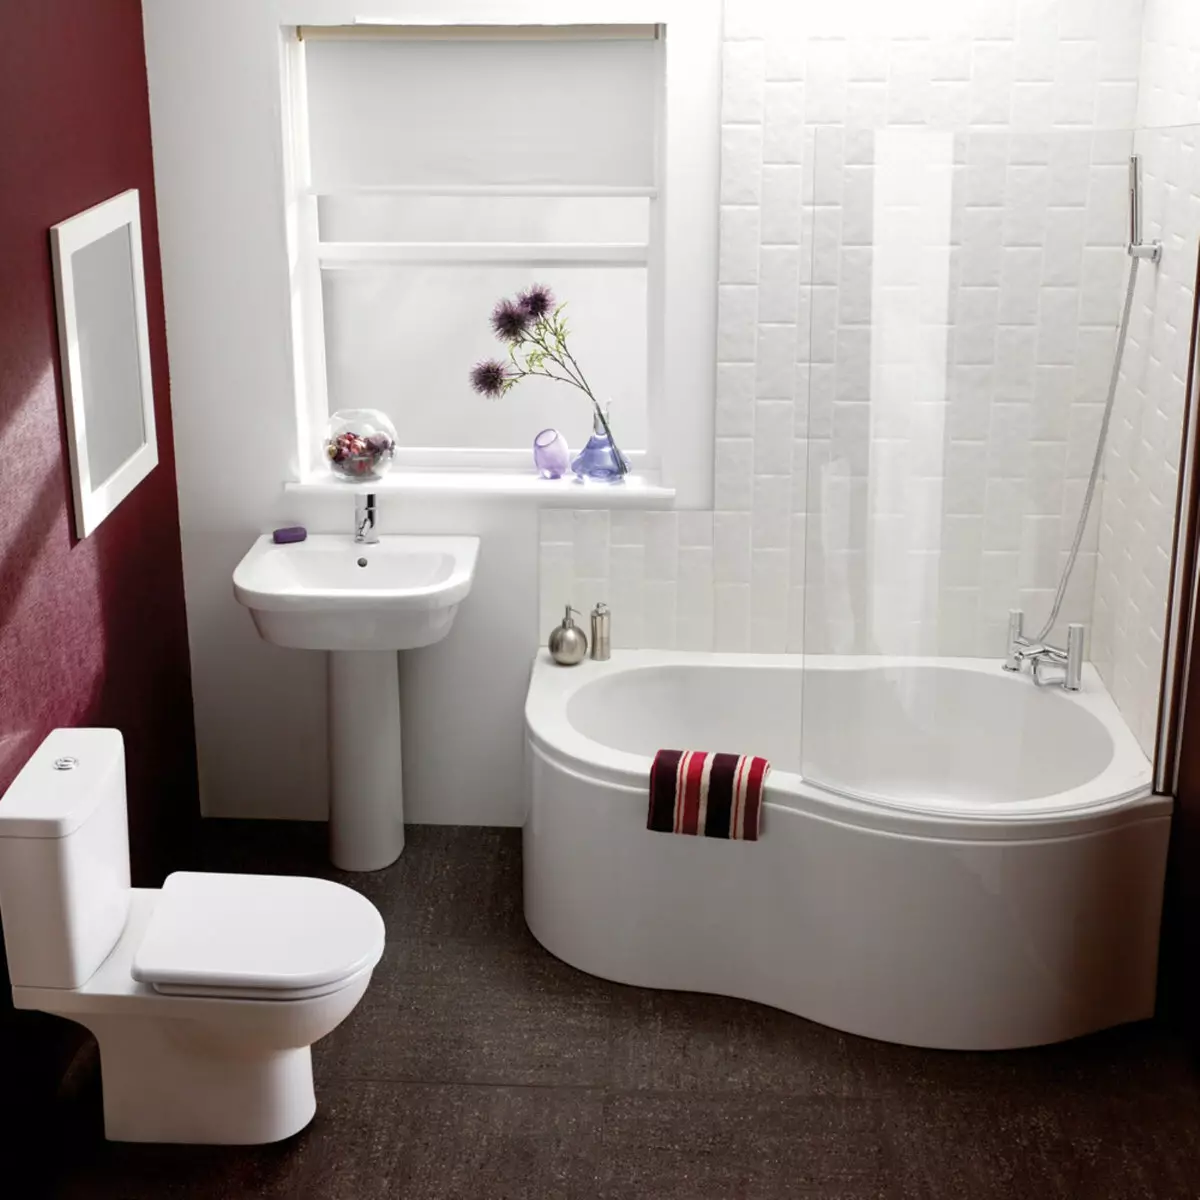 أحواض صغيرة: أحجام مصغرة حمام. نصائح لاختيار حمام صغير، والأمثلة من الحمامات صغيرة الحجم في المناطق الداخلية 10223_4